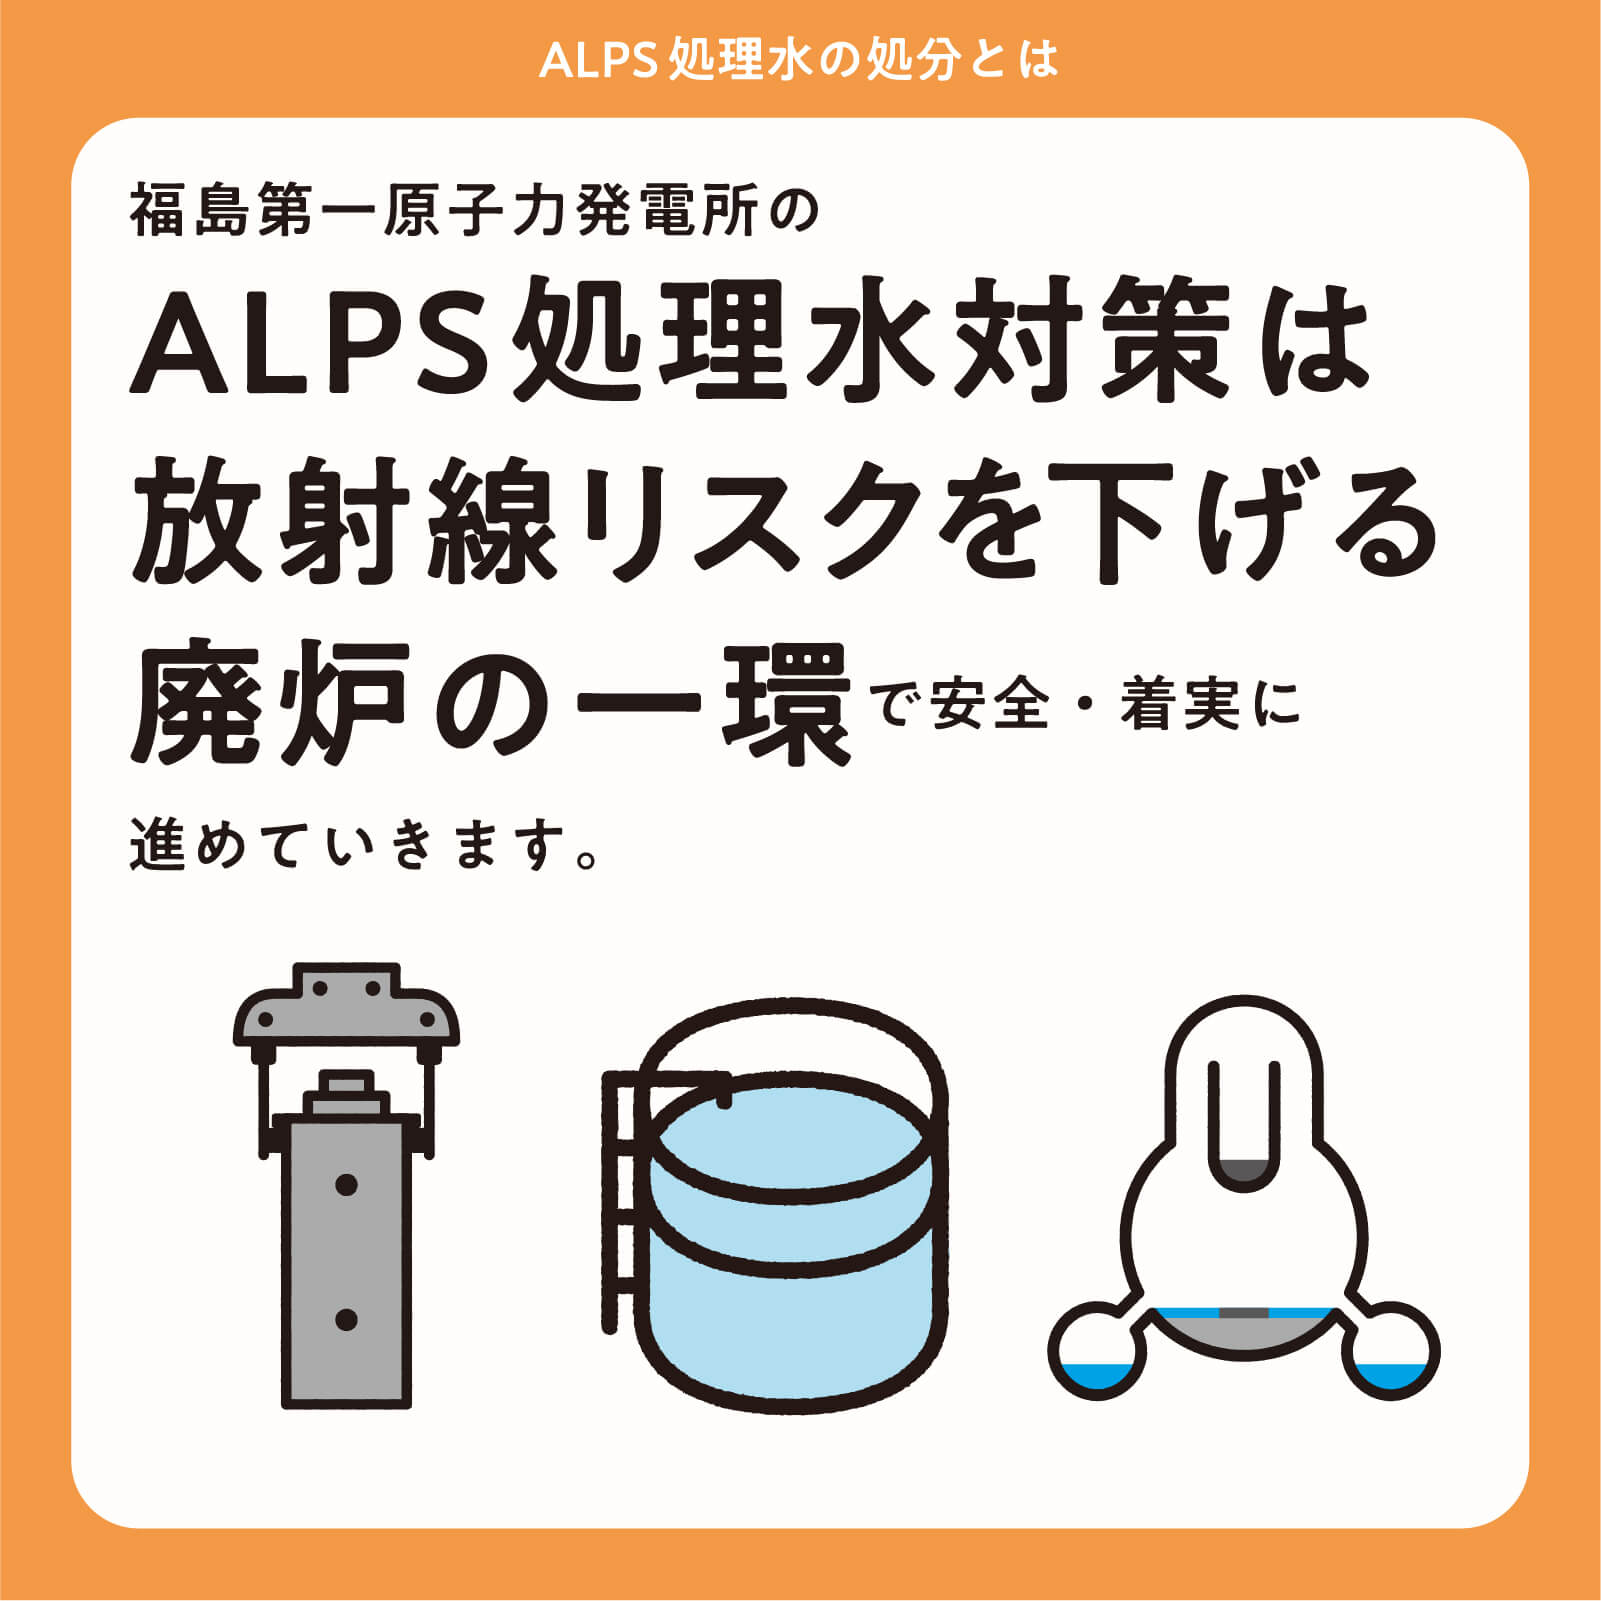 福島第一原子力発電所のALPS処理水対策は放射線リスクを下げる廃炉の一環で安全・着実に進めていきます。